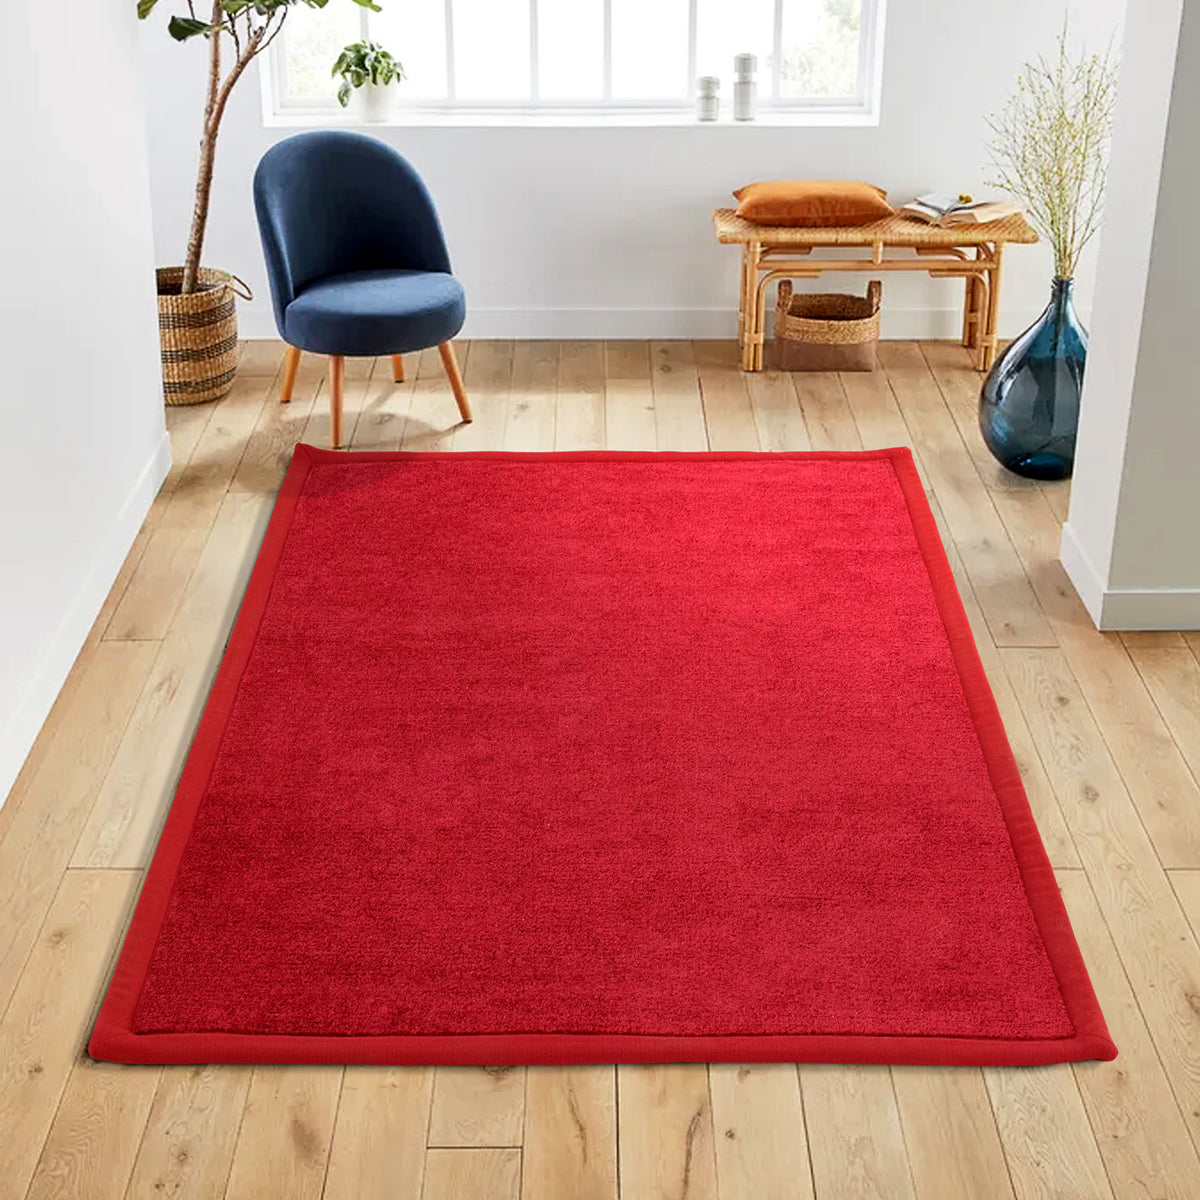 Luxury Red Polypropylene Carpet with Anti-Slip Backing